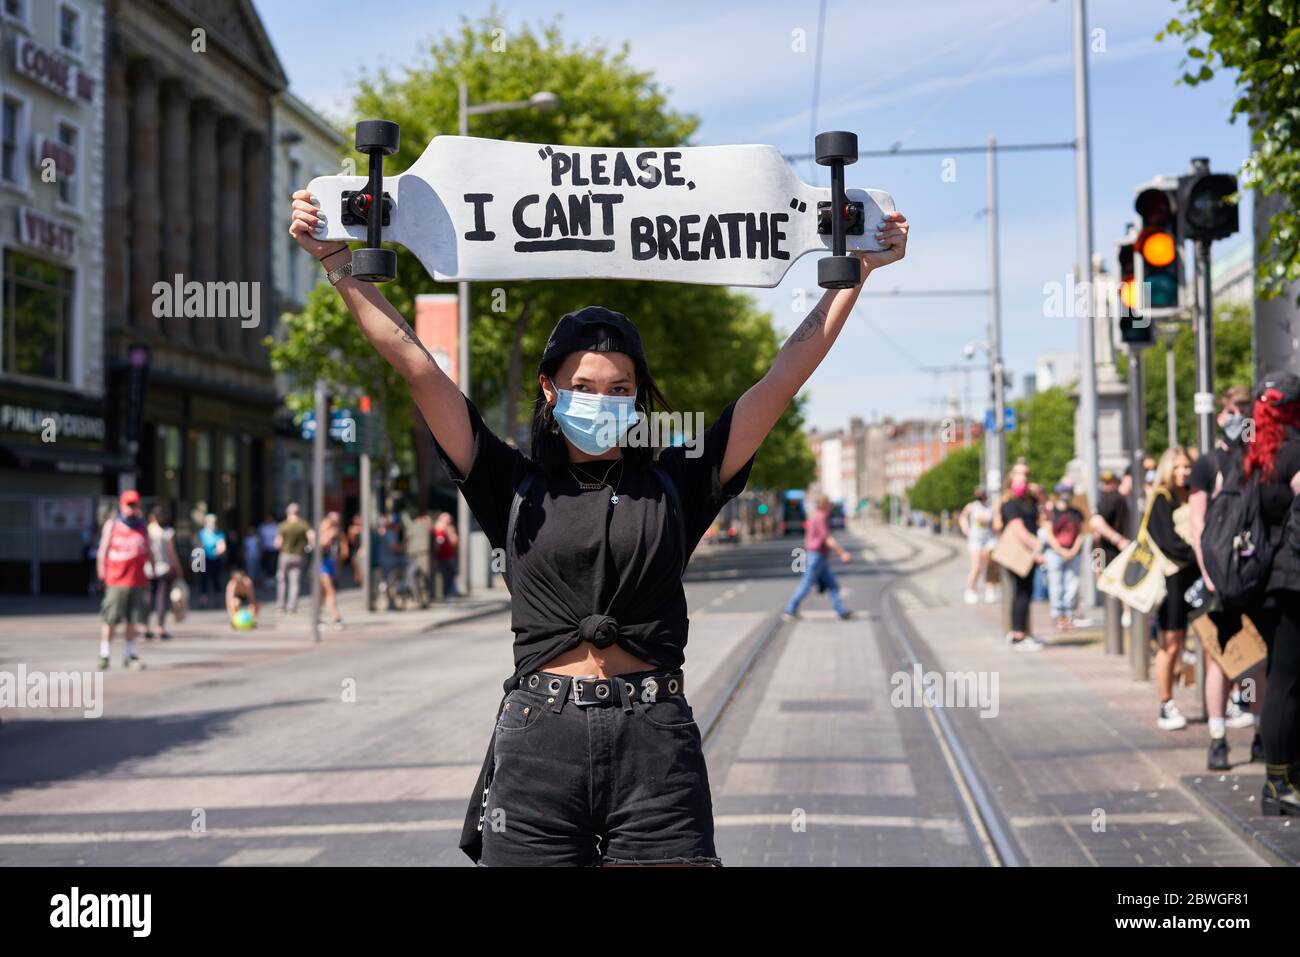 Retrato de una protestera que sostenía un cartel de Black Lives Matter en la ciudad de Dublín, irlanda, protestando por la muerte de George Floyd en los Estados Unidos. Foto de stock